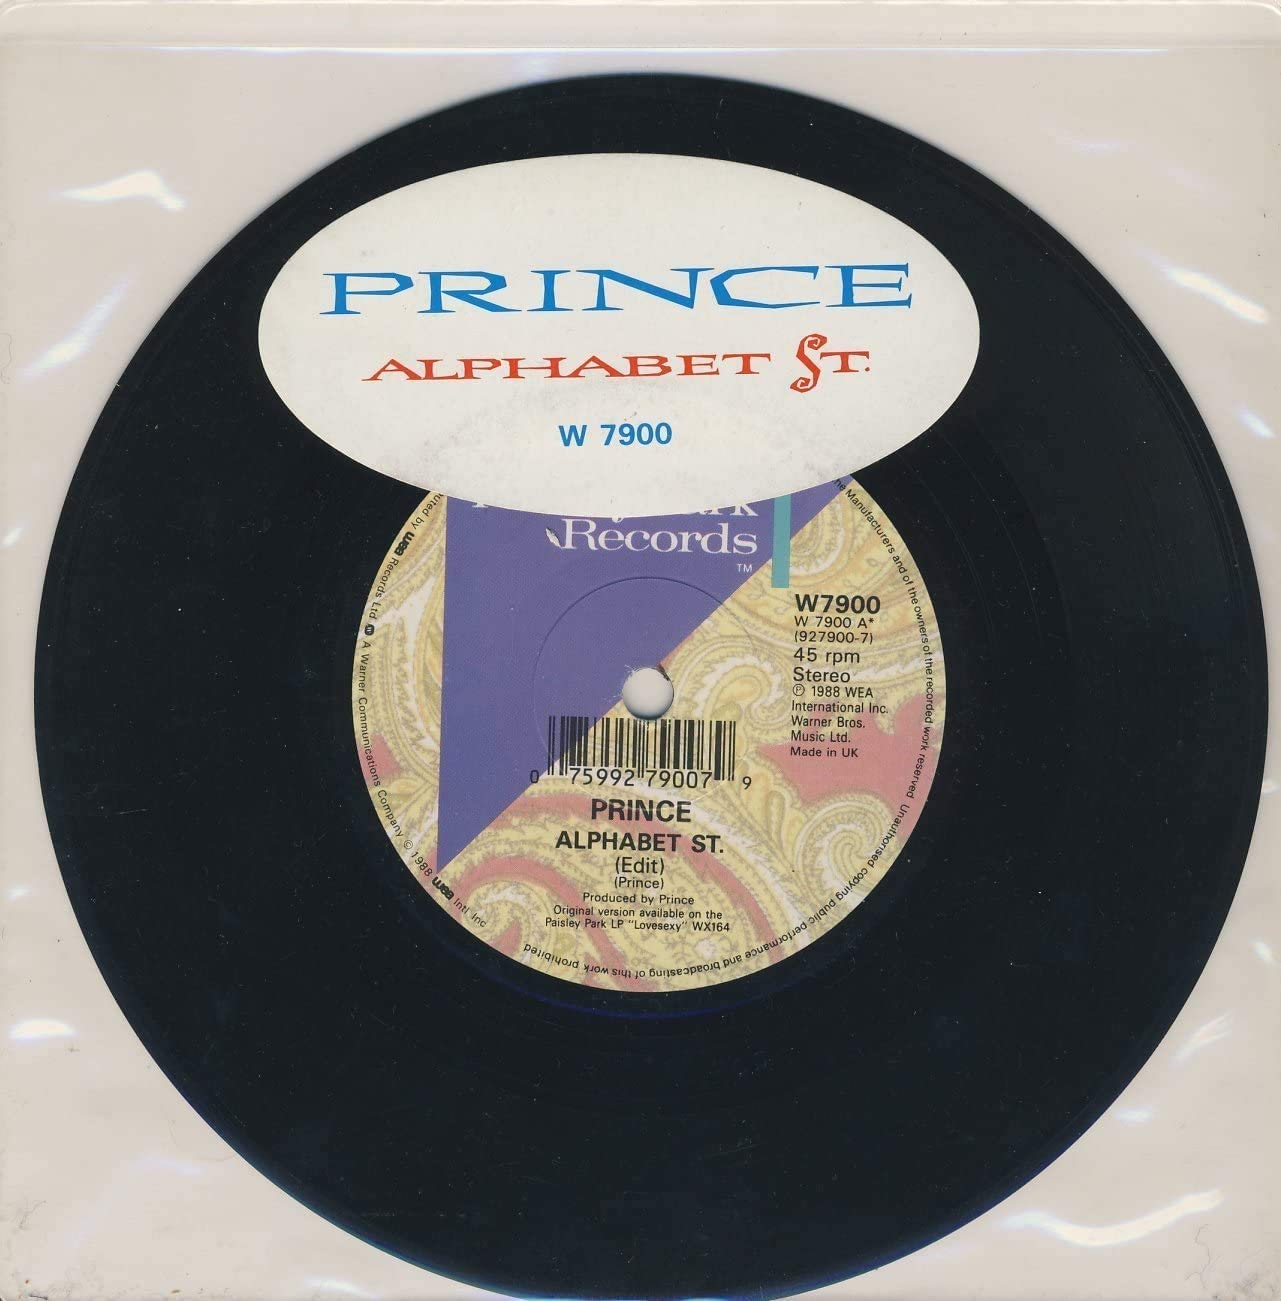 Prince — Alphabet St. cover artwork